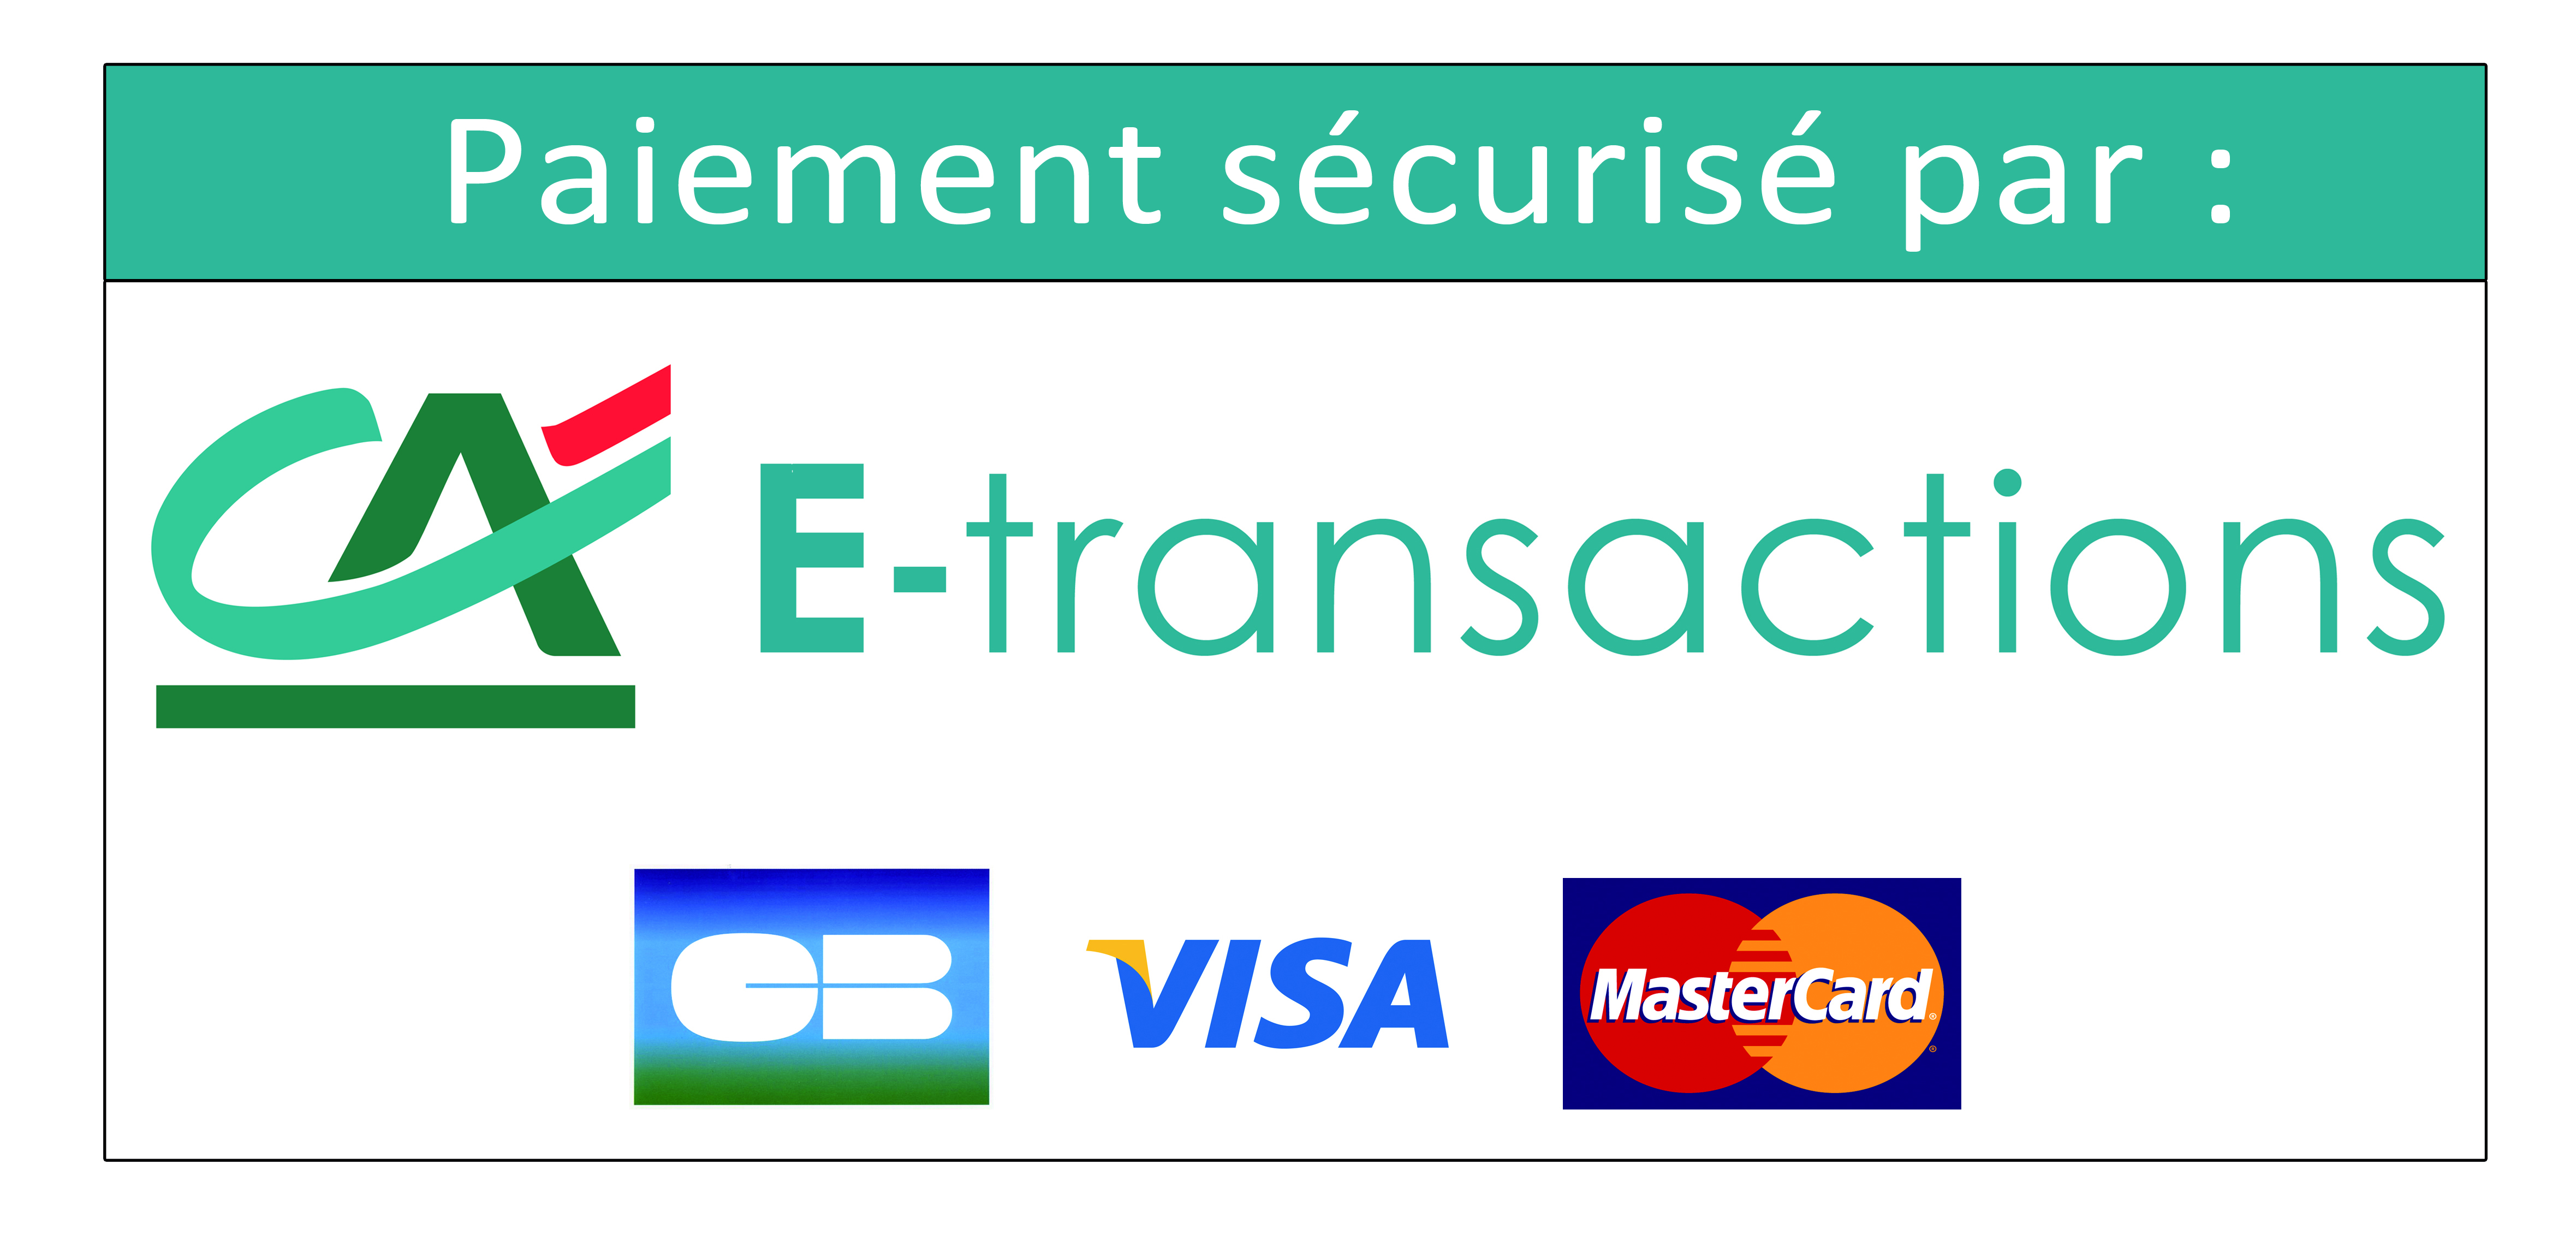 Paiement_Securise_par_E-transactions.jpg